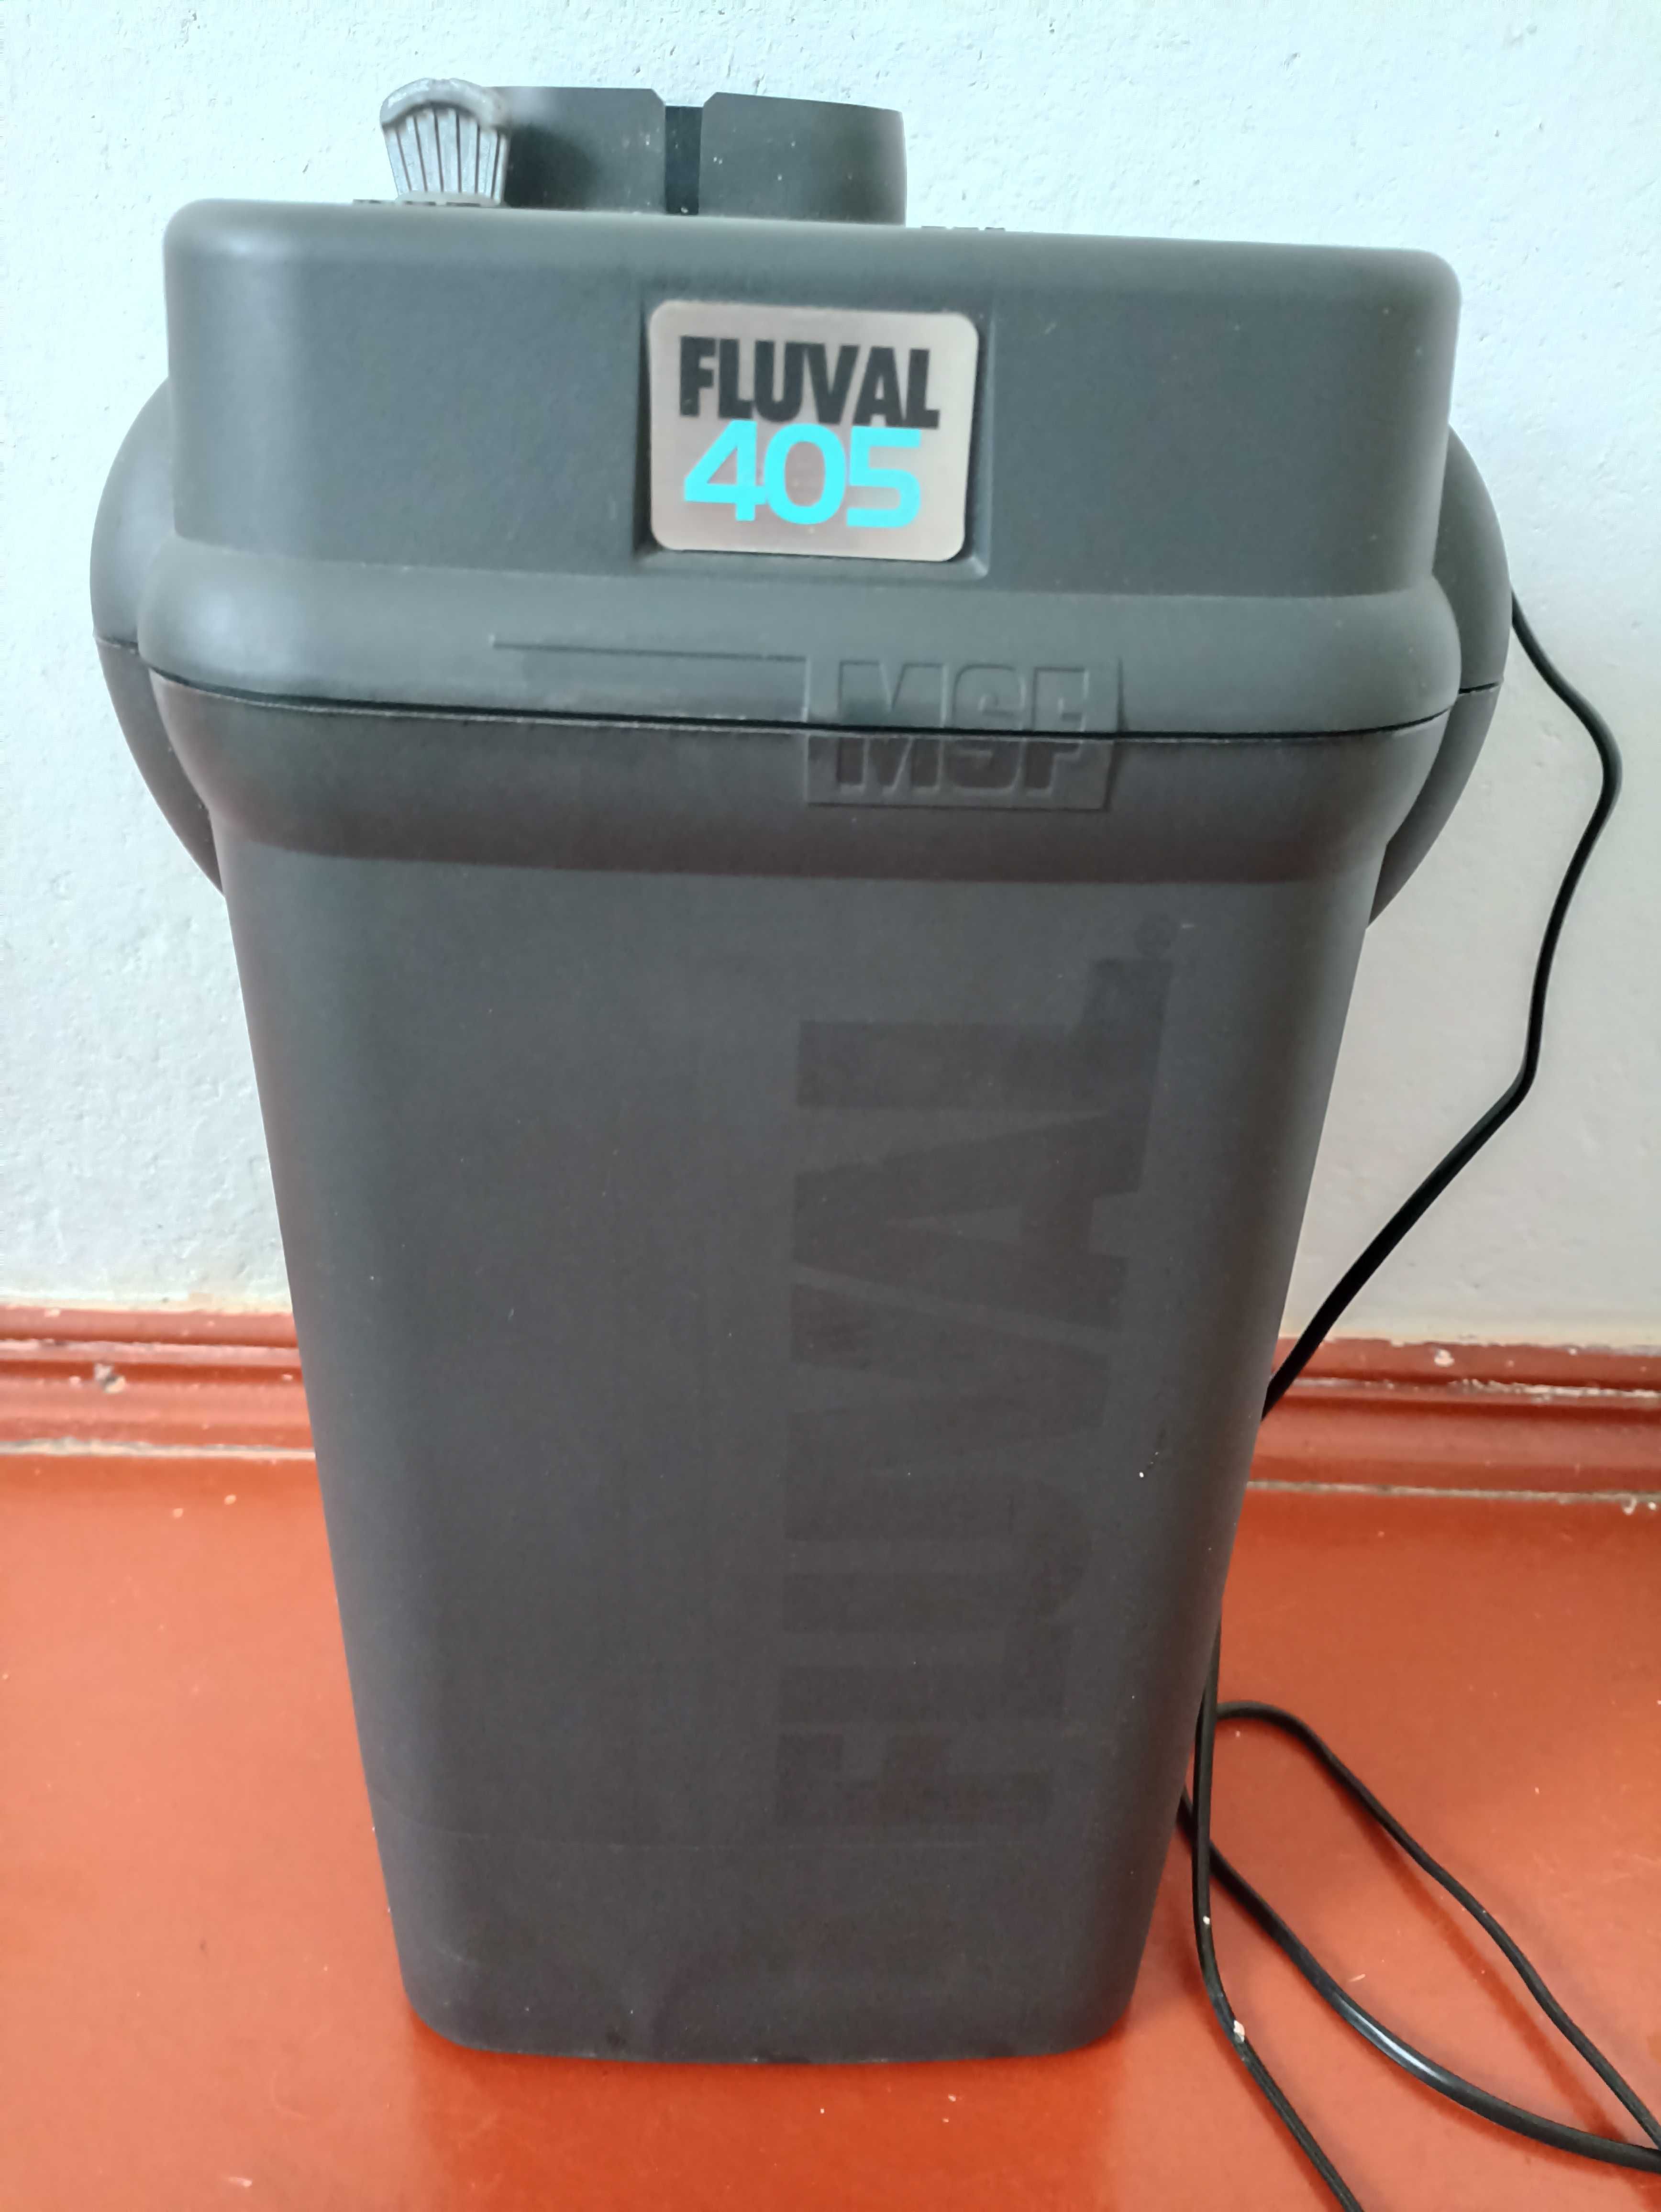 Продам внешний фильтр для аквариума FLUVAL 405